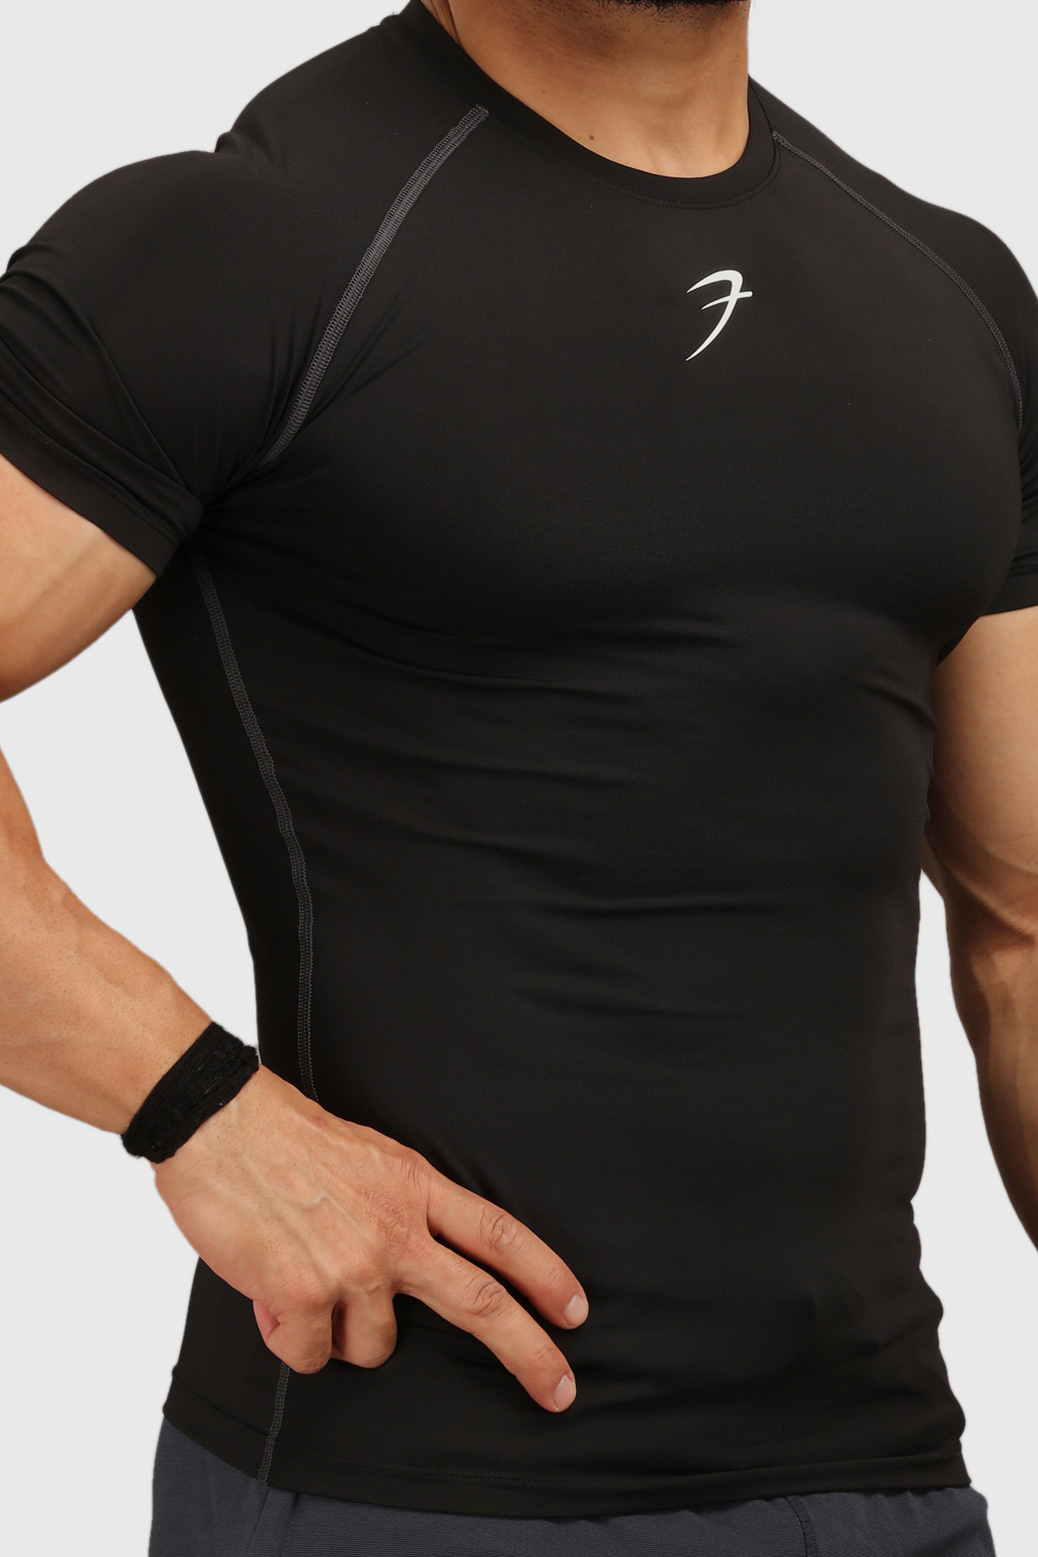 Fuaark Compression Black Tshirt For Men | Fuaark Gym tshirts